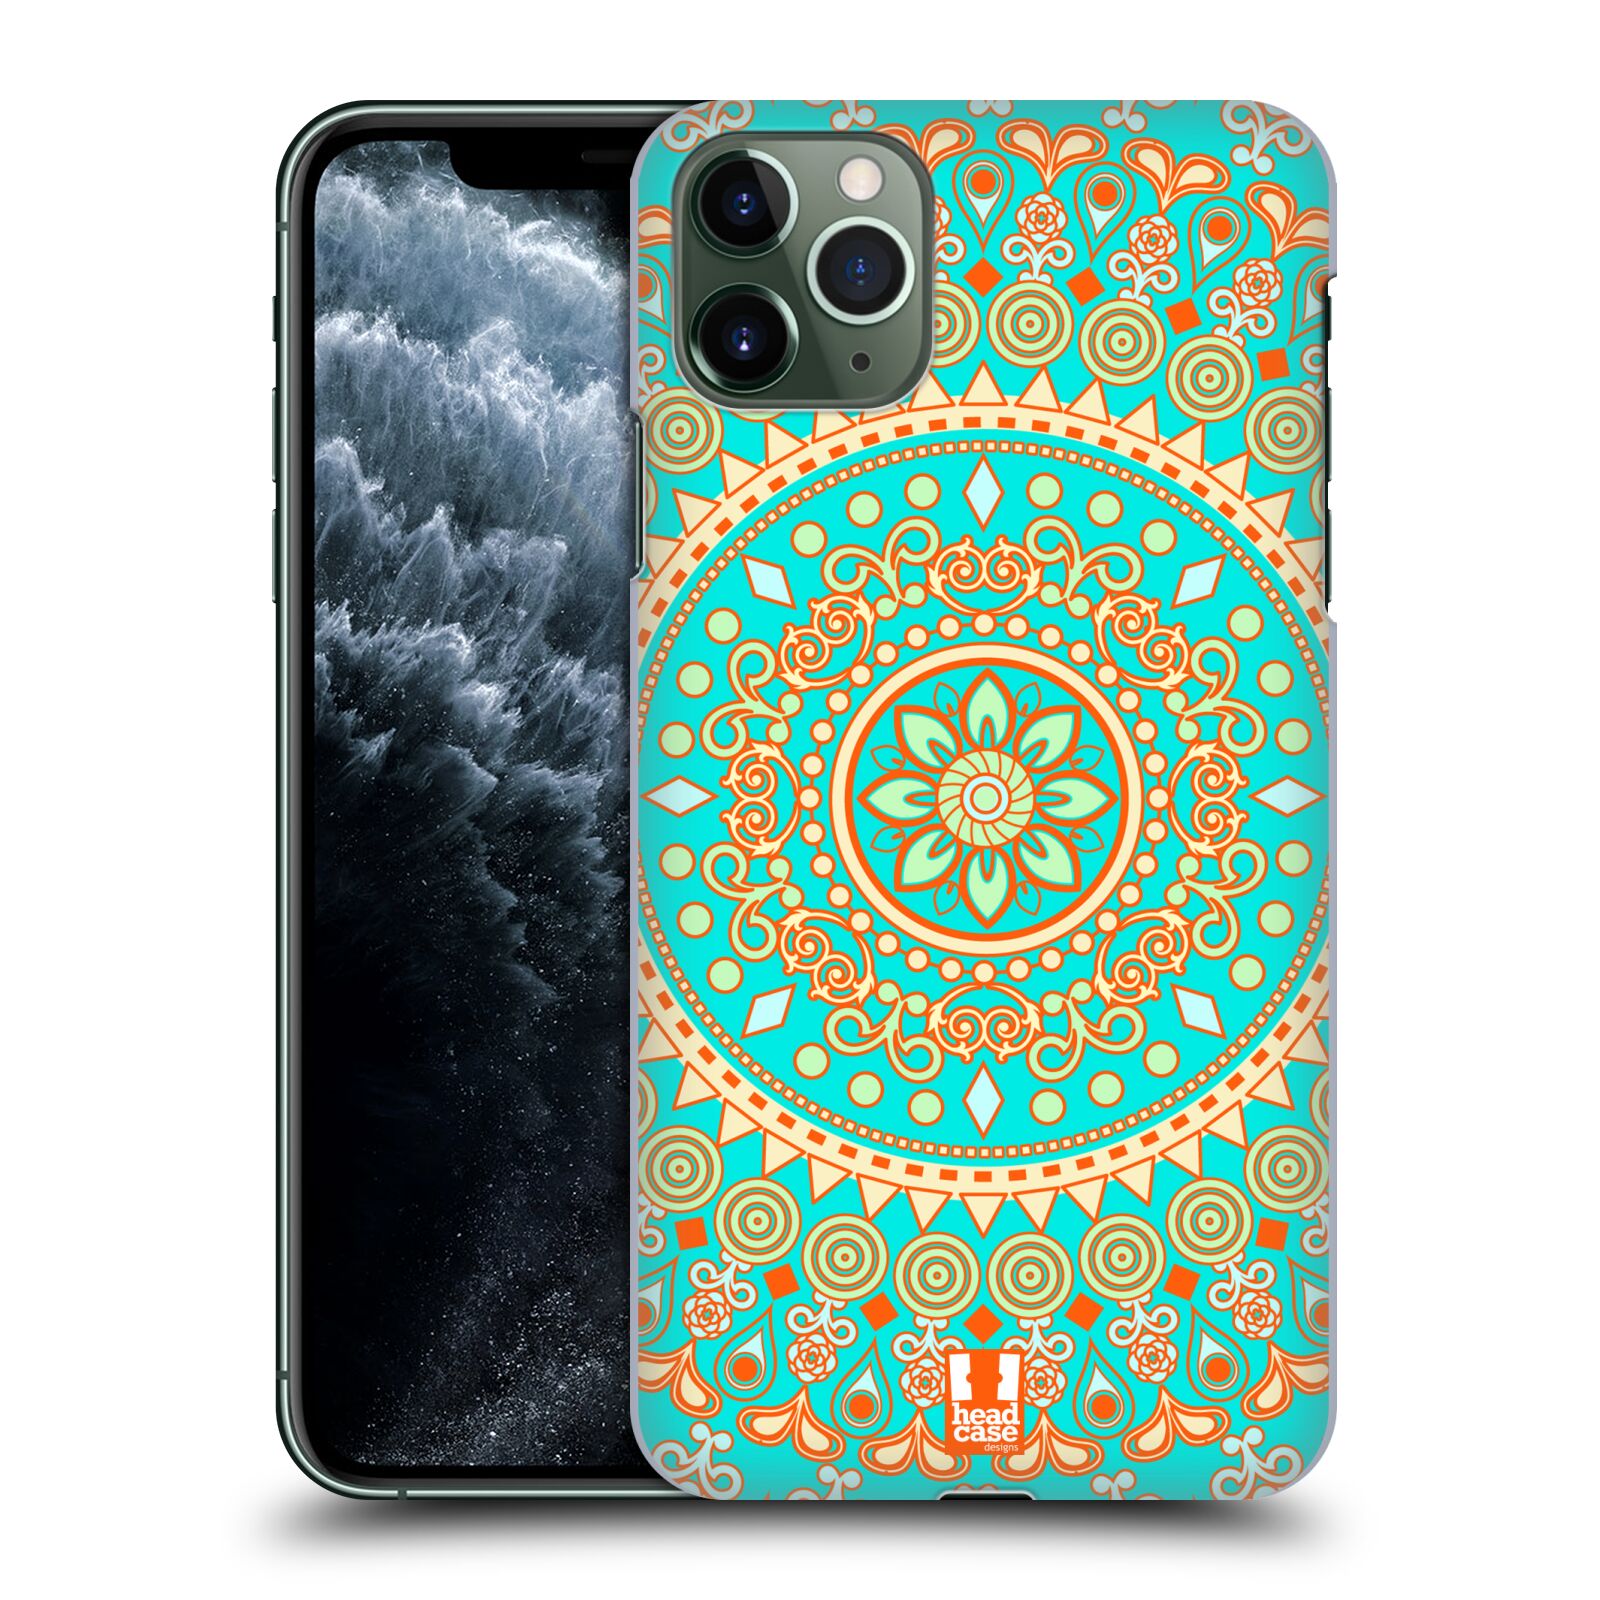 Pouzdro na mobil Apple Iphone 11 PRO MAX - HEAD CASE - vzor Indie Mandala slunce barevný motiv TYRKYSOVÁ, ZELENÁ